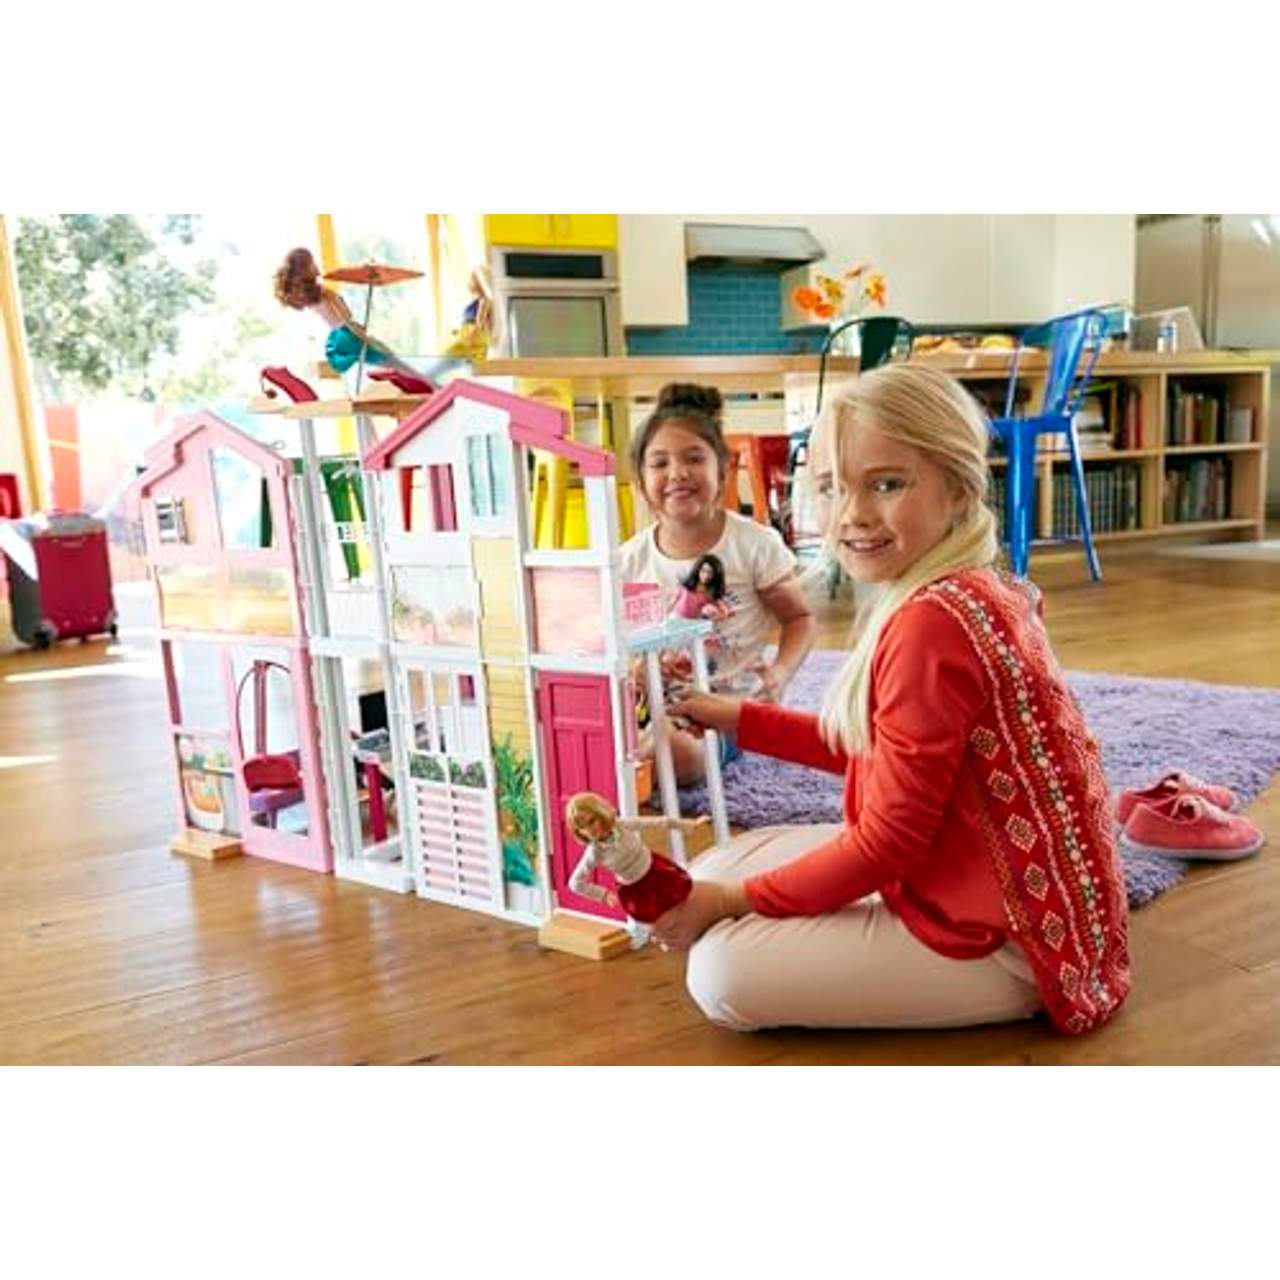 Barbie DLY32 Stadthaus mit 3 Etagen